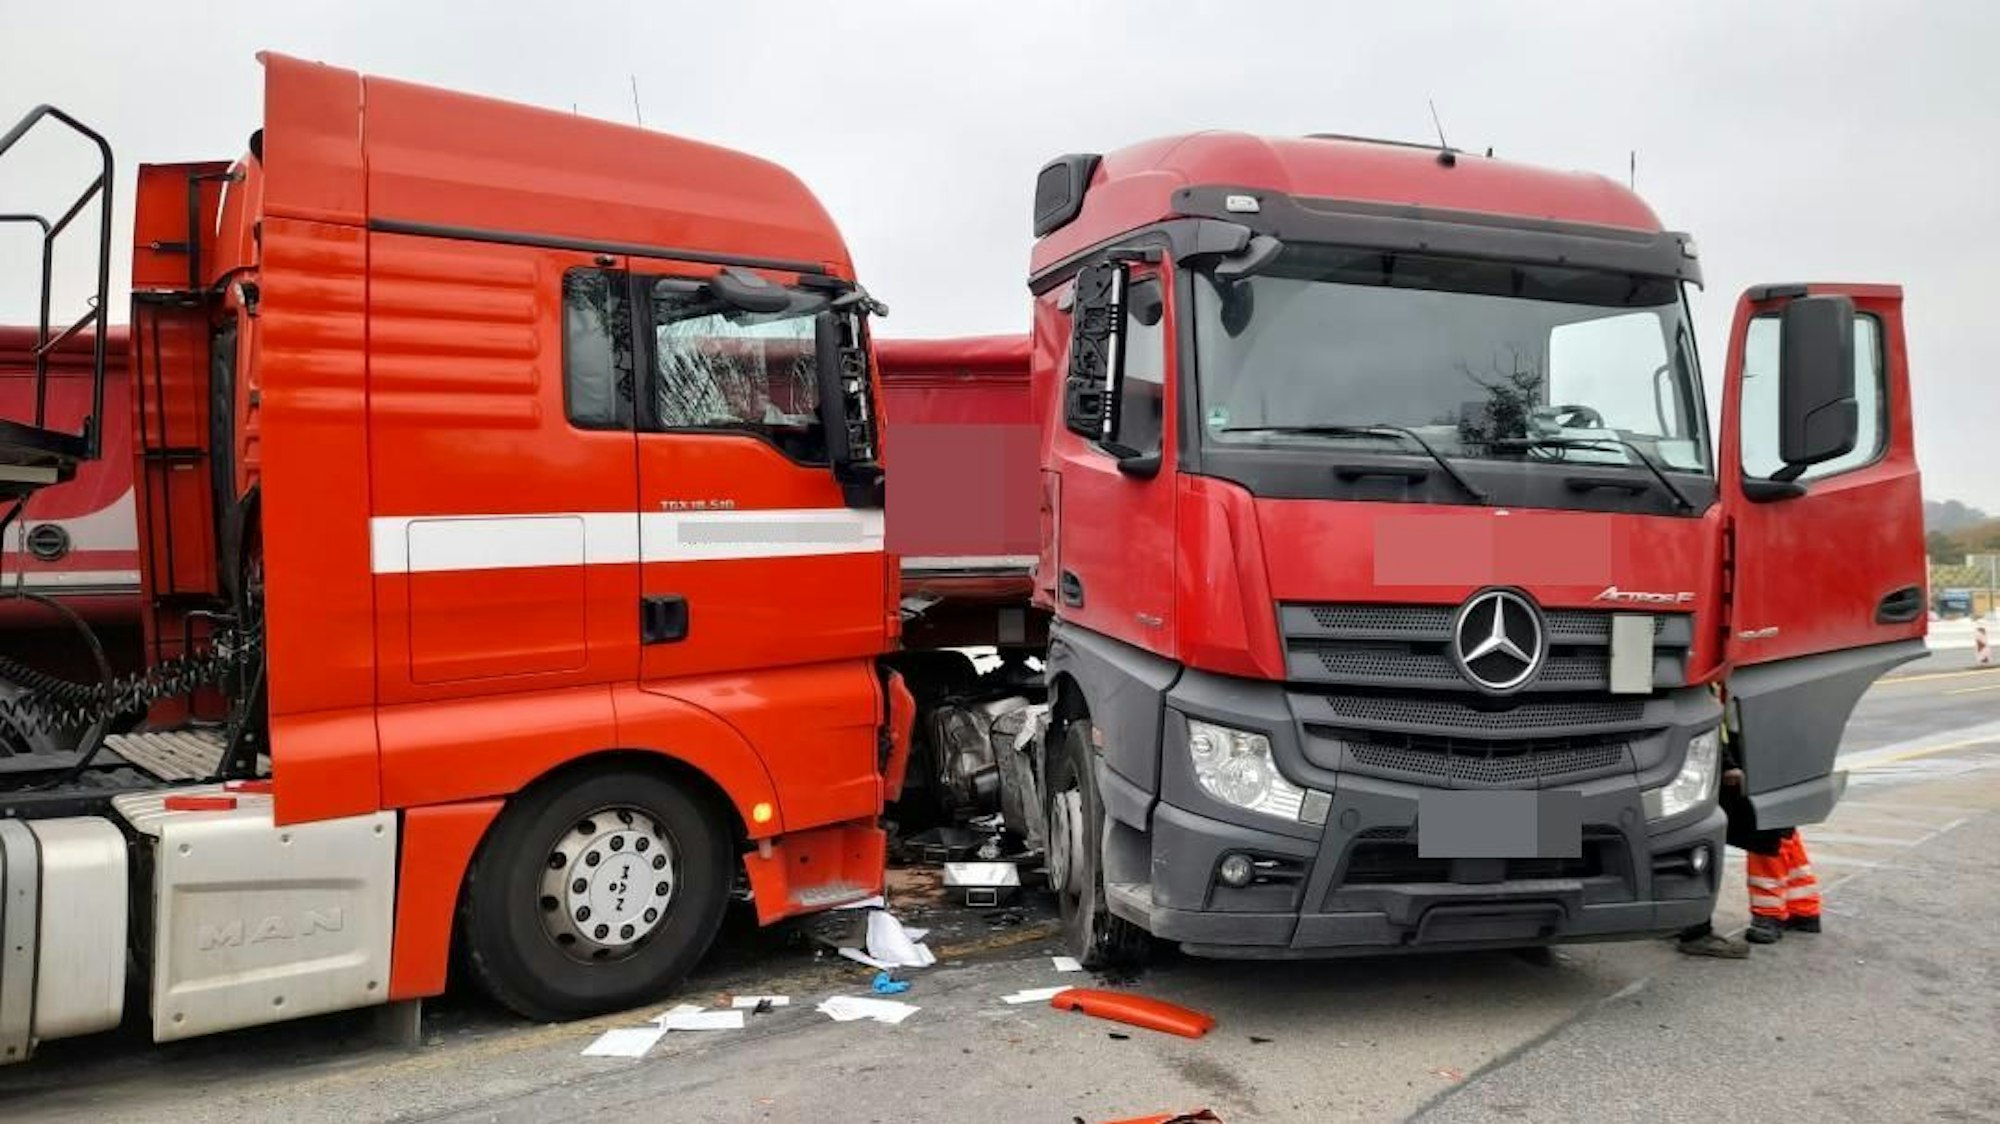 Zwei rote Lkw-Fahrerkabinen stehen beschädigt auf der Autobahn. Auf dem Boden liegen Papiere und abgeplatztes Plastik verteilt.